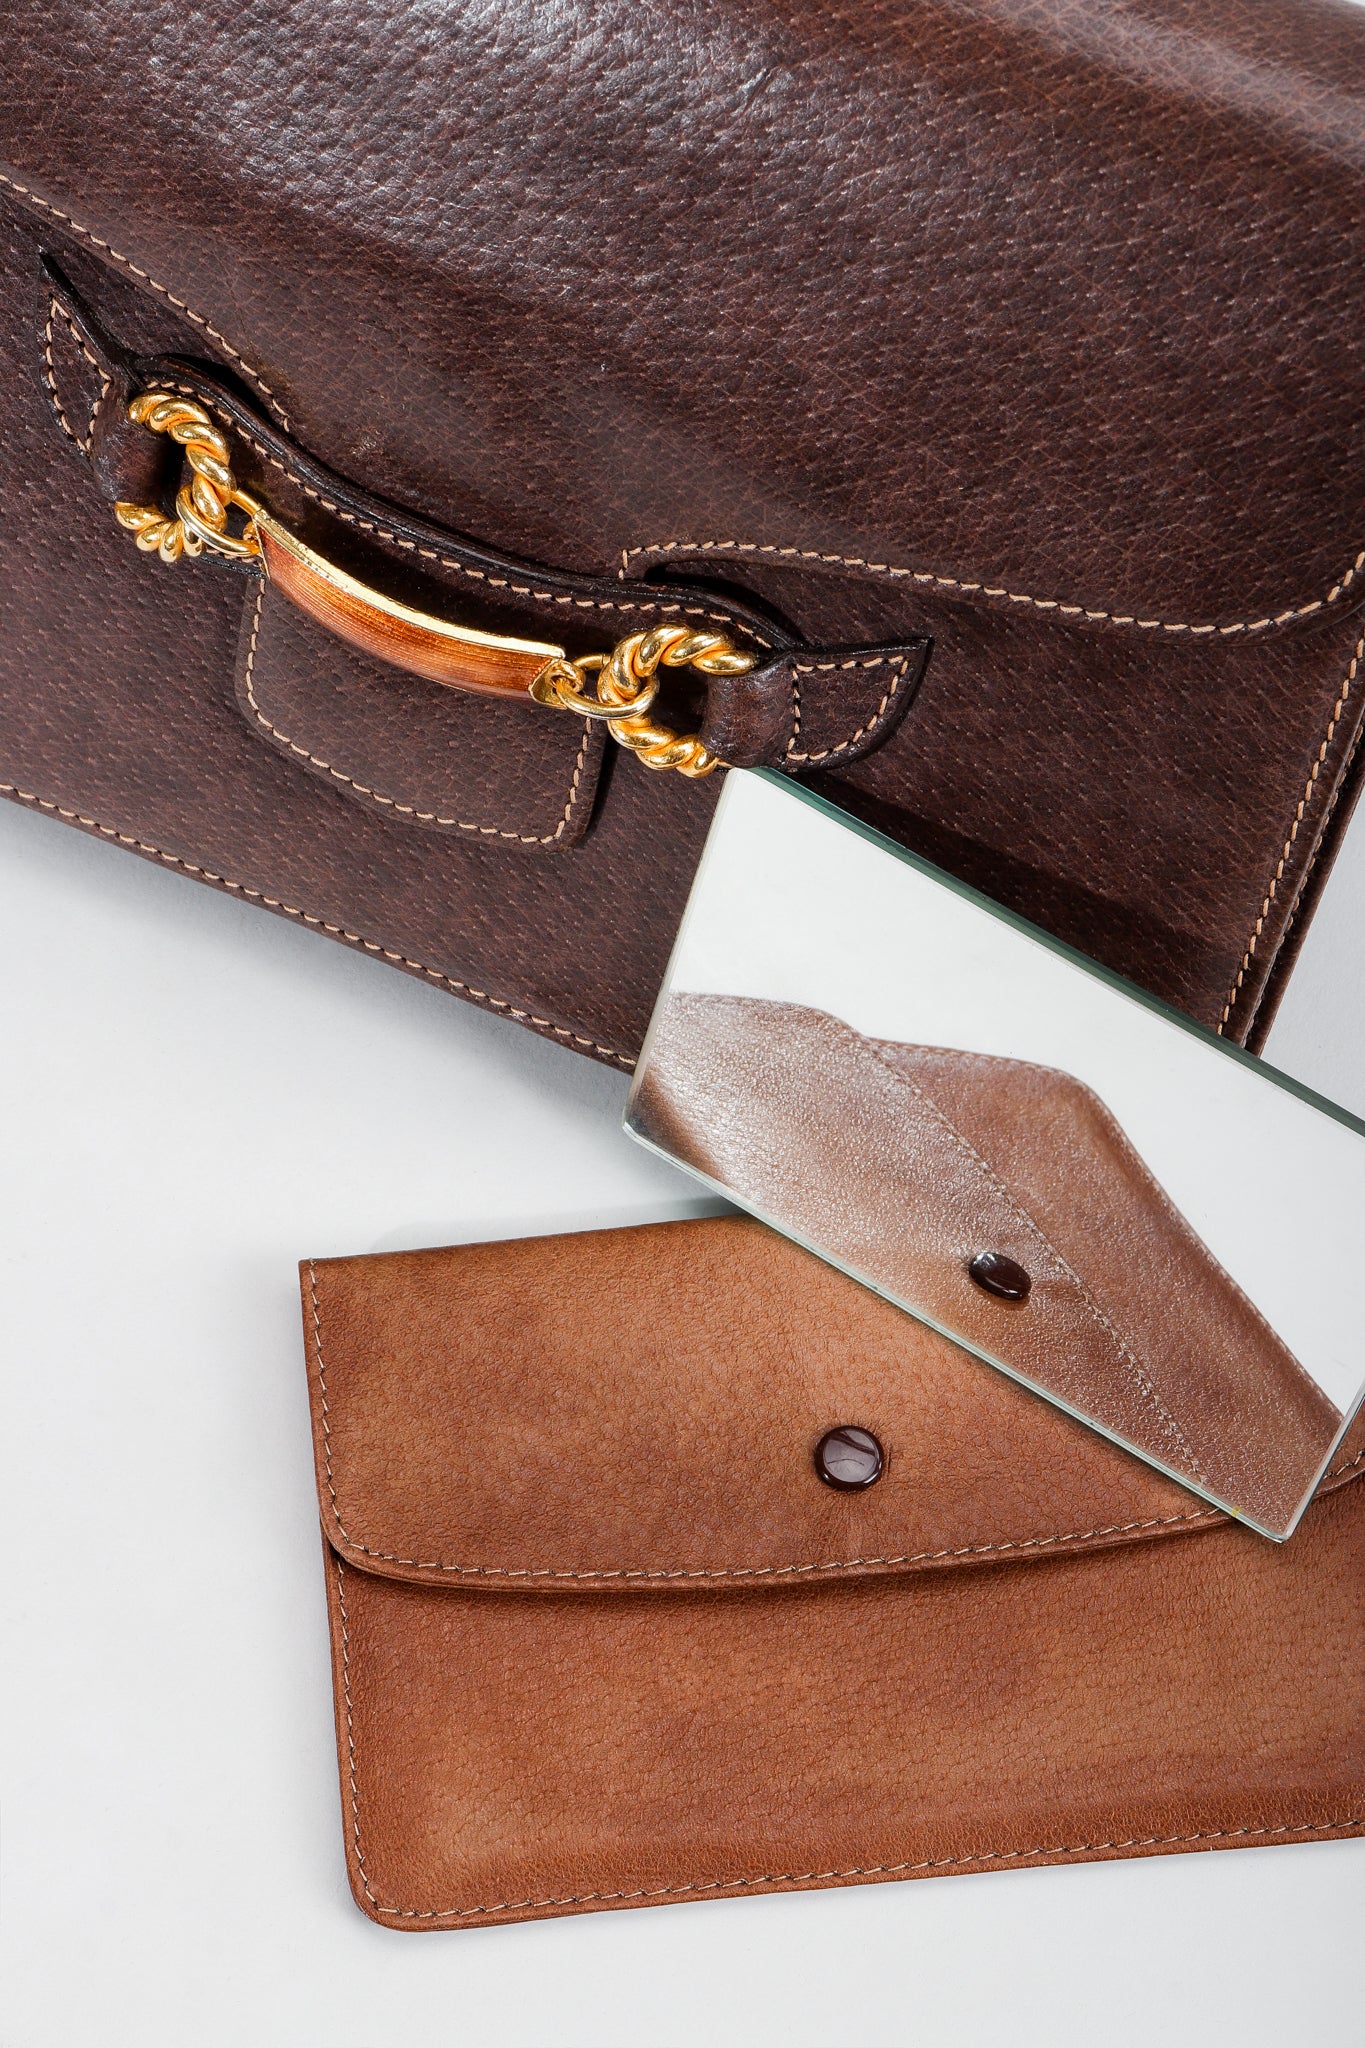 Vintage Gucci Grain Leather Shoulder Bag Mirror Case at Recess LA 